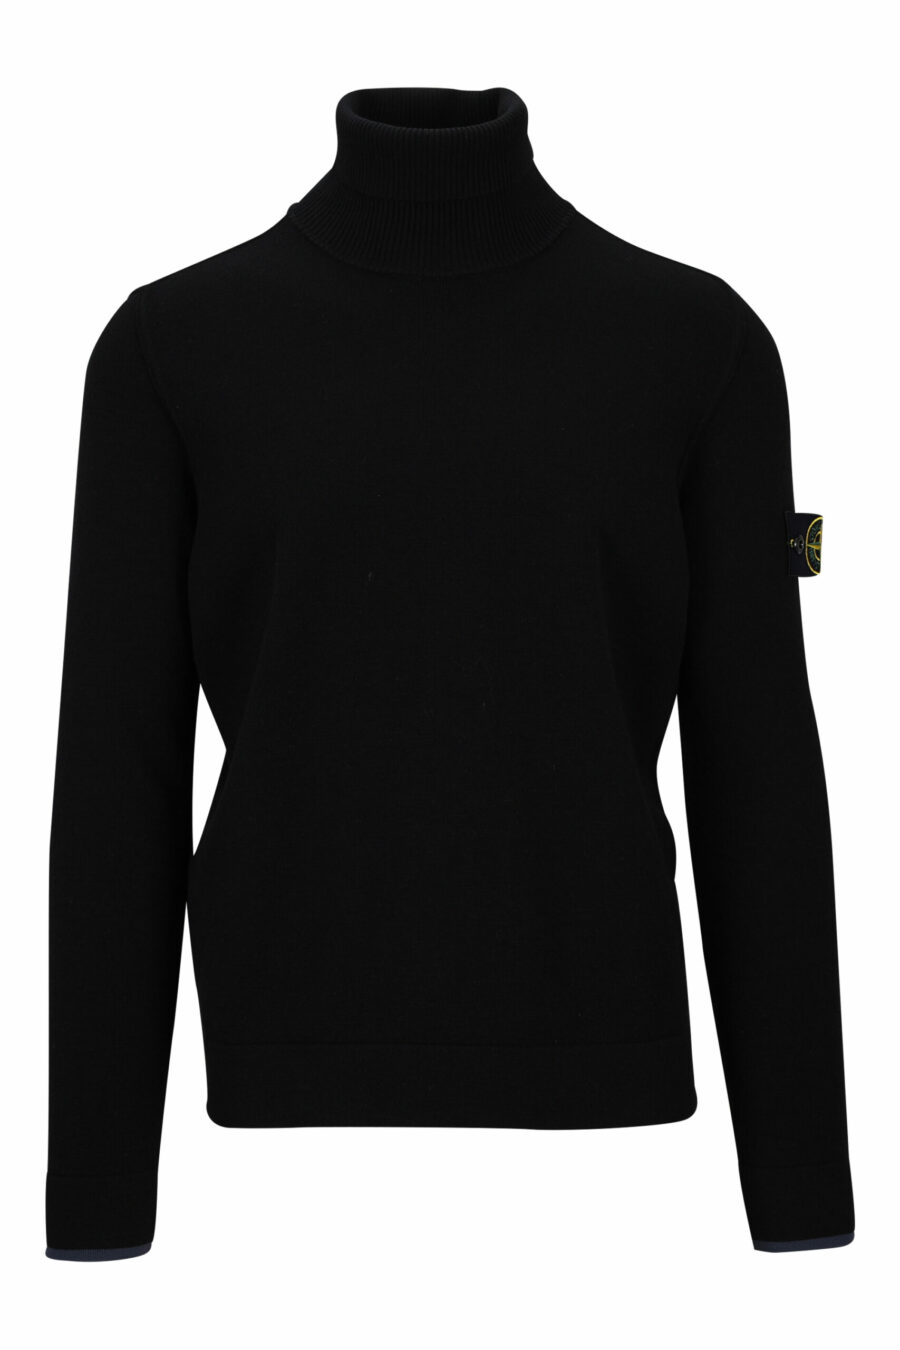 Schwarzes Sweatshirt mit hohem Kragen und seitlichem Logoaufnäher - 8052572741814 skaliert